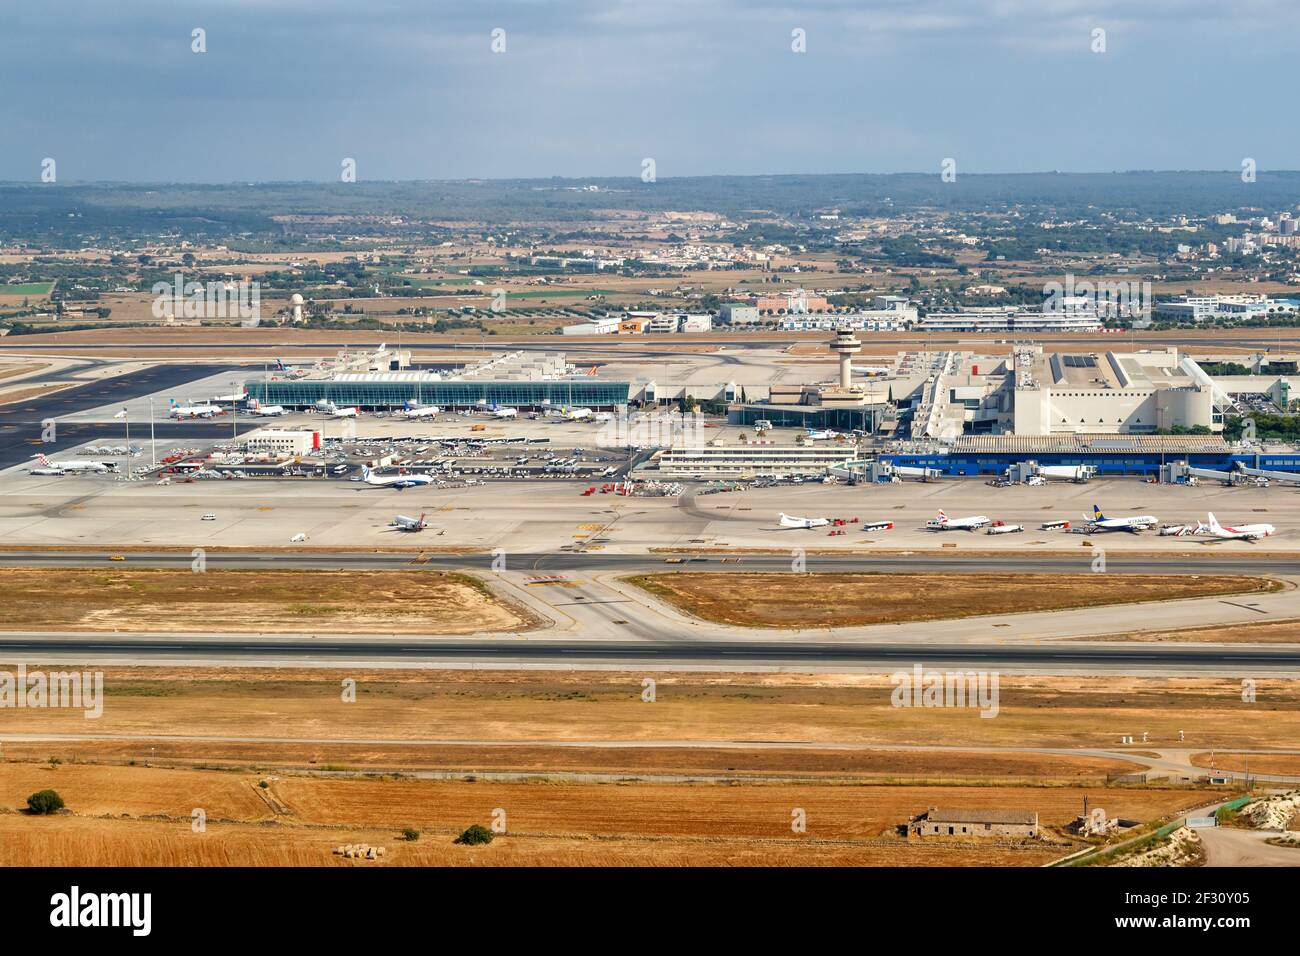 Palma de Mallorca, Spagna - 21 luglio 2018: Foto aerea dell'aeroporto di Palma de Mallorca in Spagna. Foto Stock